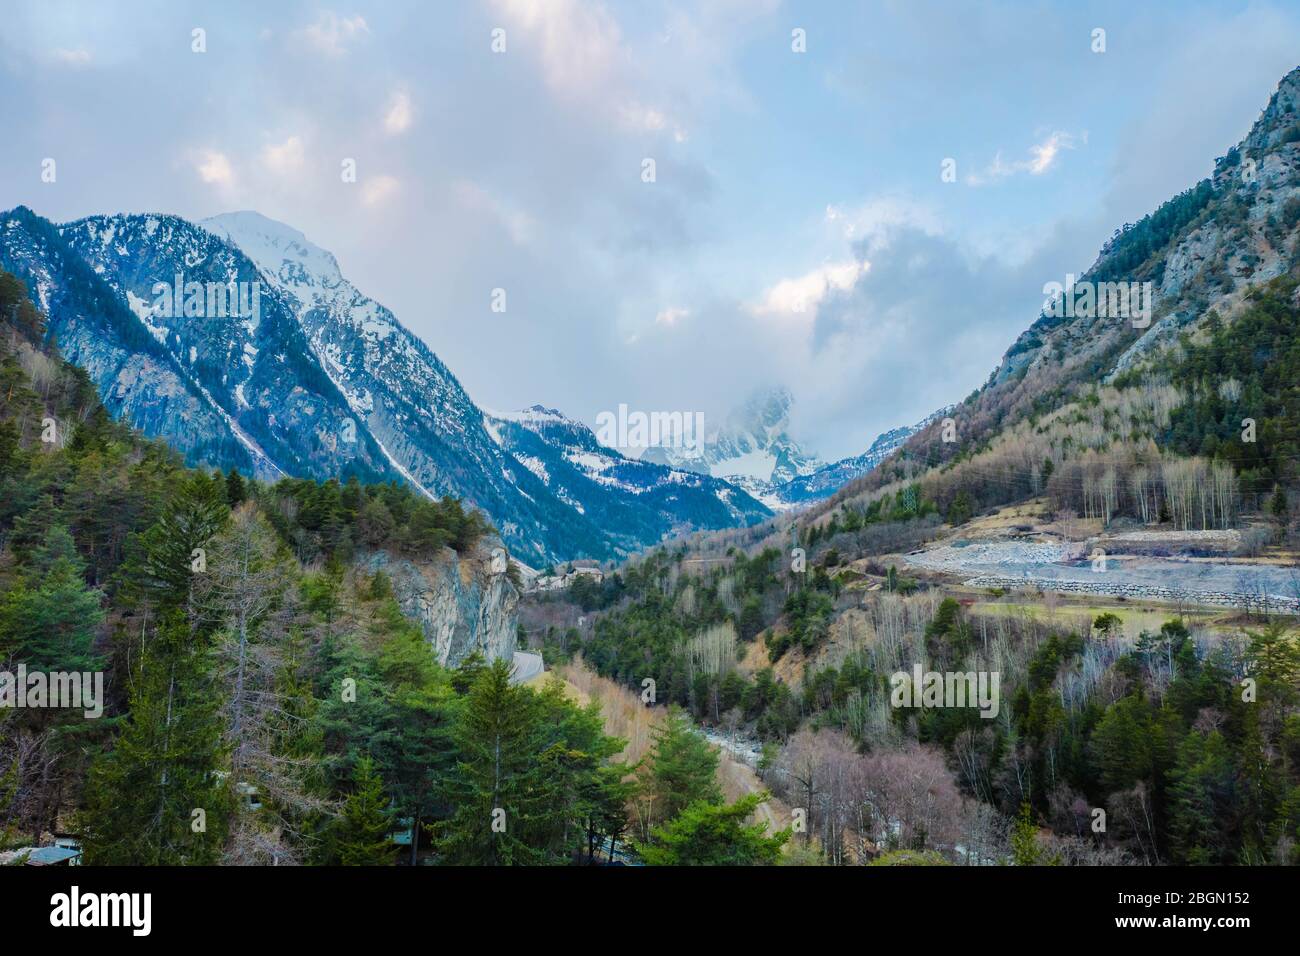 Il villaggio di Palleusieux sotto una grande montagna, nel Basin Pre-Saint-Didier, Valle d'Aosta al momento della comparsa del virus corona, Italia settentrionale Foto Stock